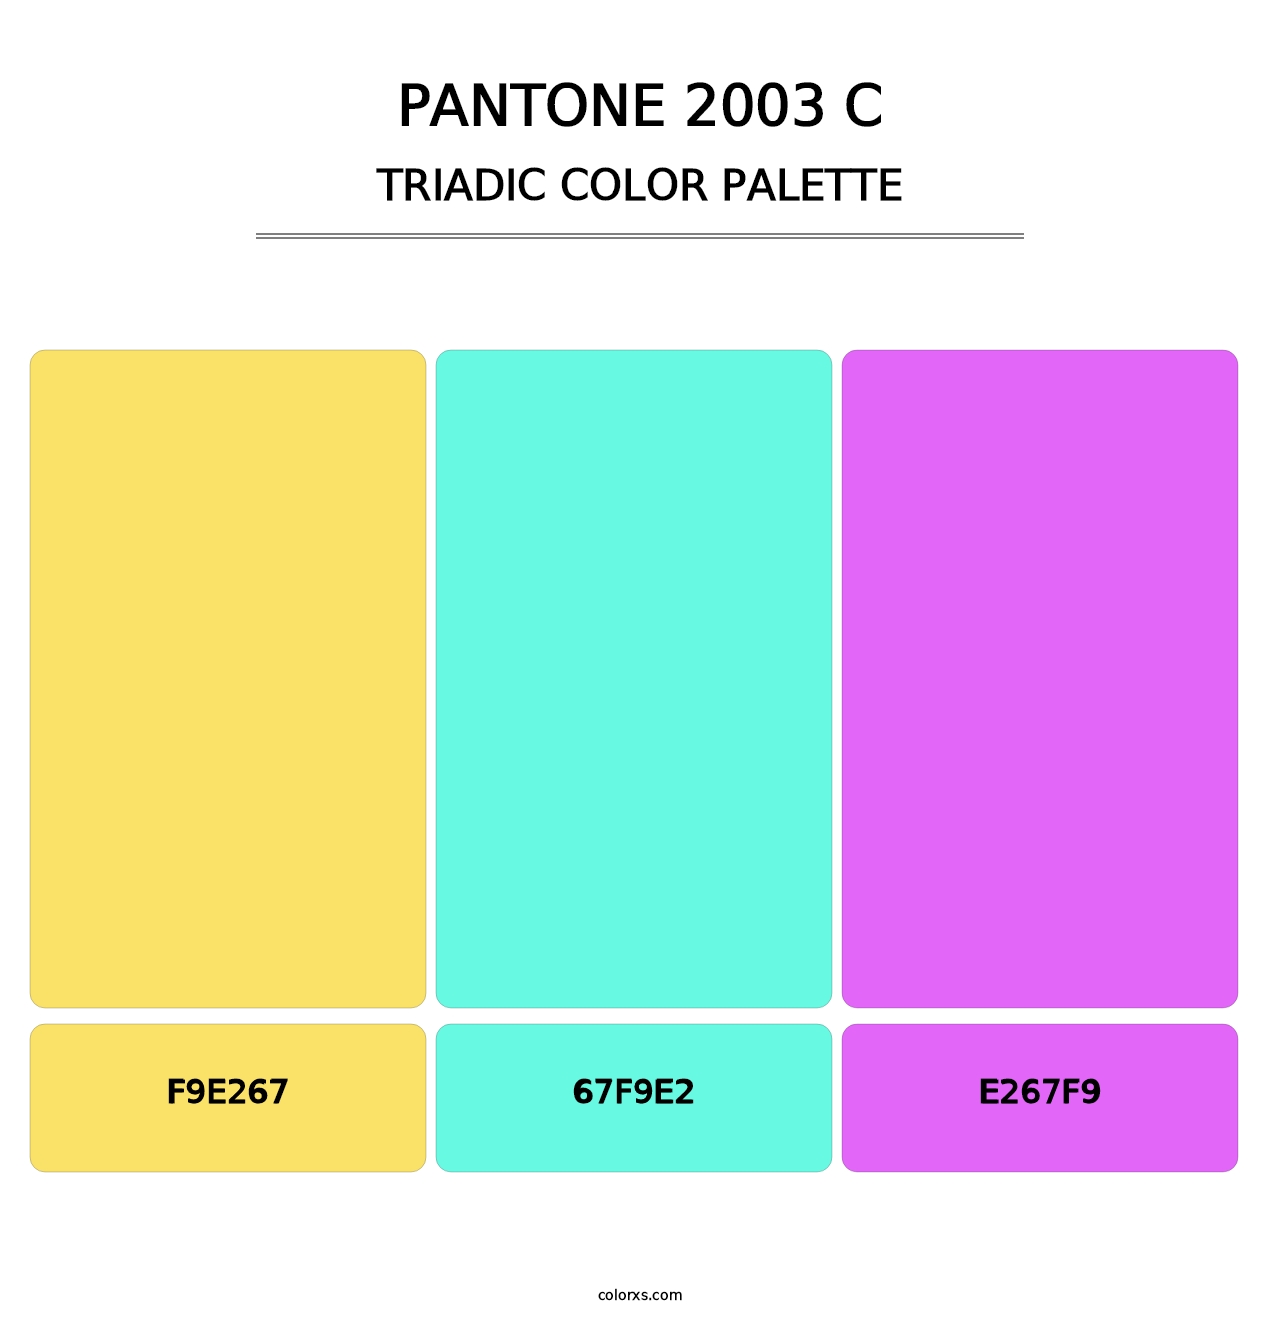 PANTONE 2003 C - Triadic Color Palette